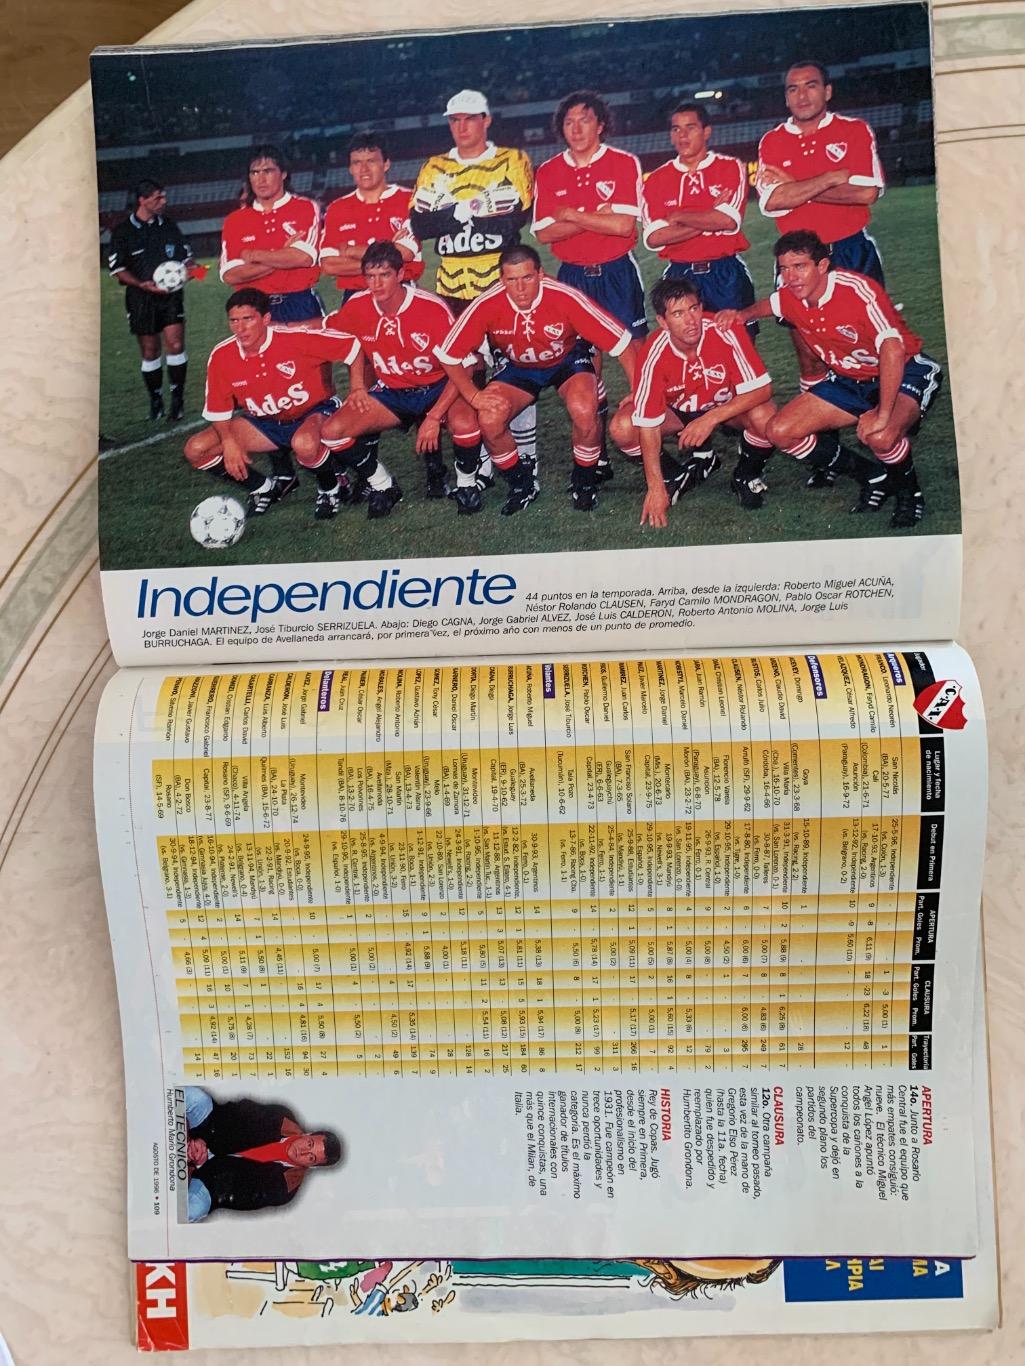 El Grafico чемпионат Аргентины 1995/96 2